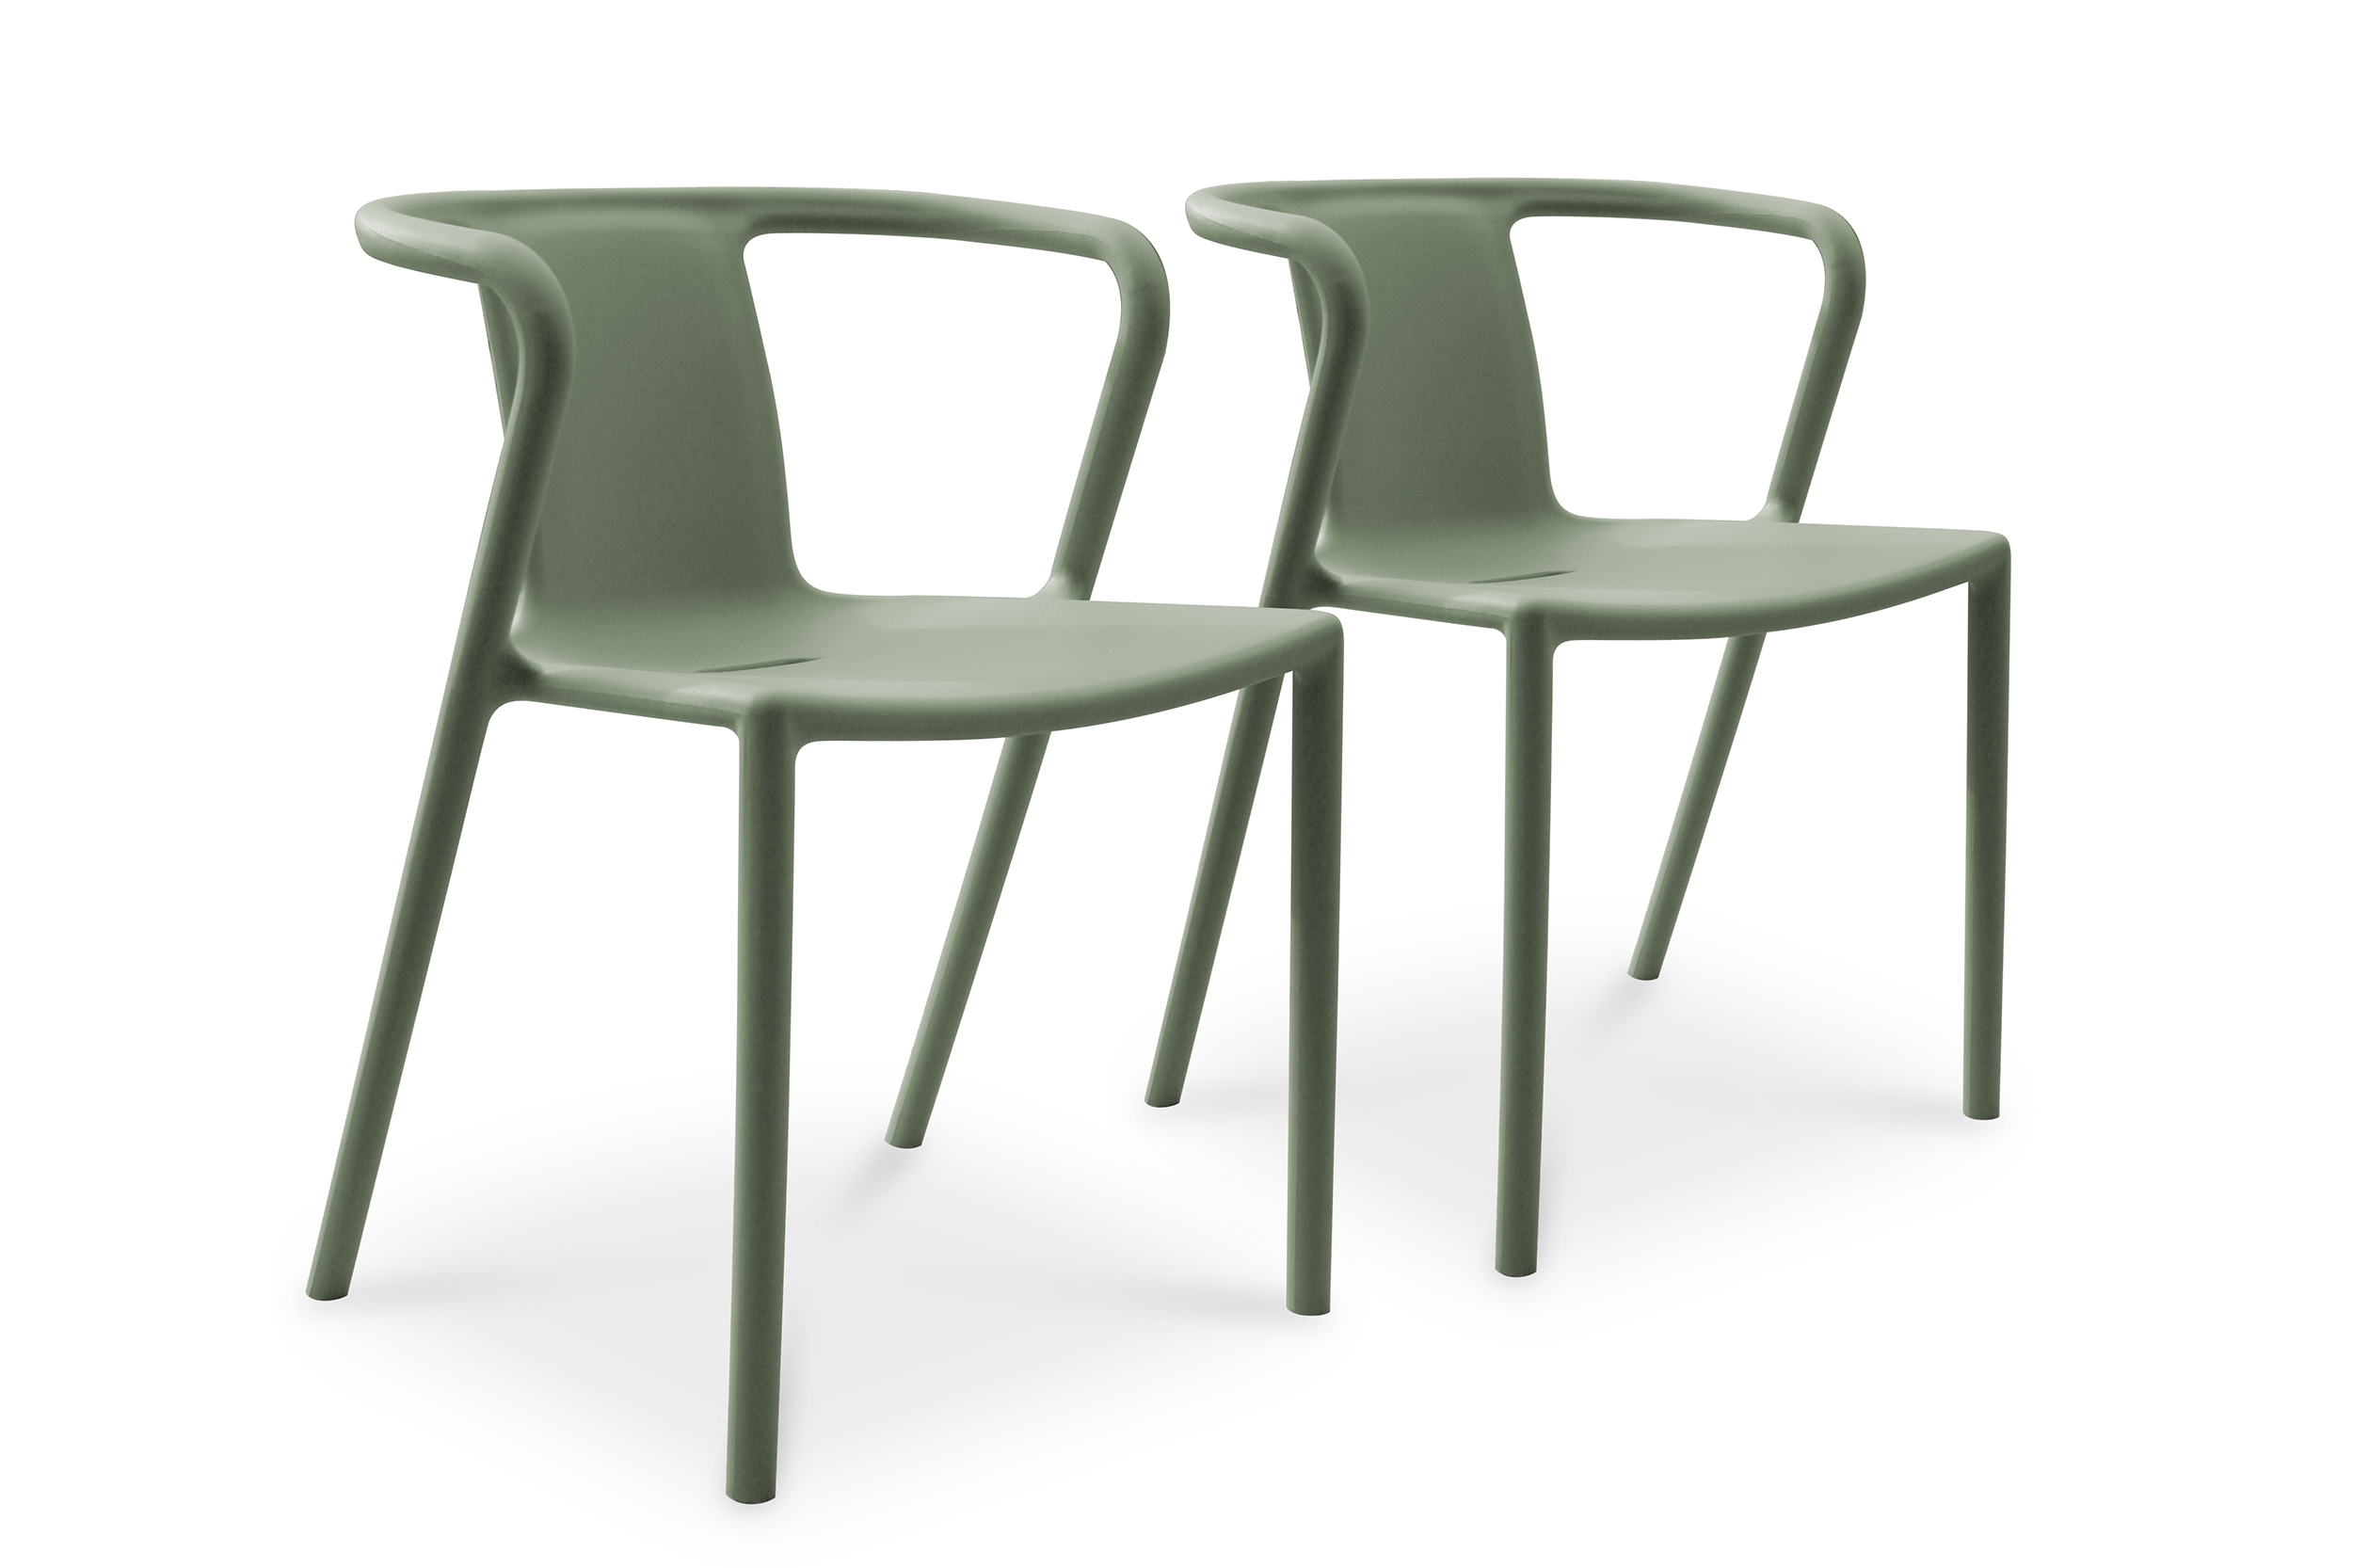 lot de 2 fauteuils de jardin empilables en polypropylène vert olive